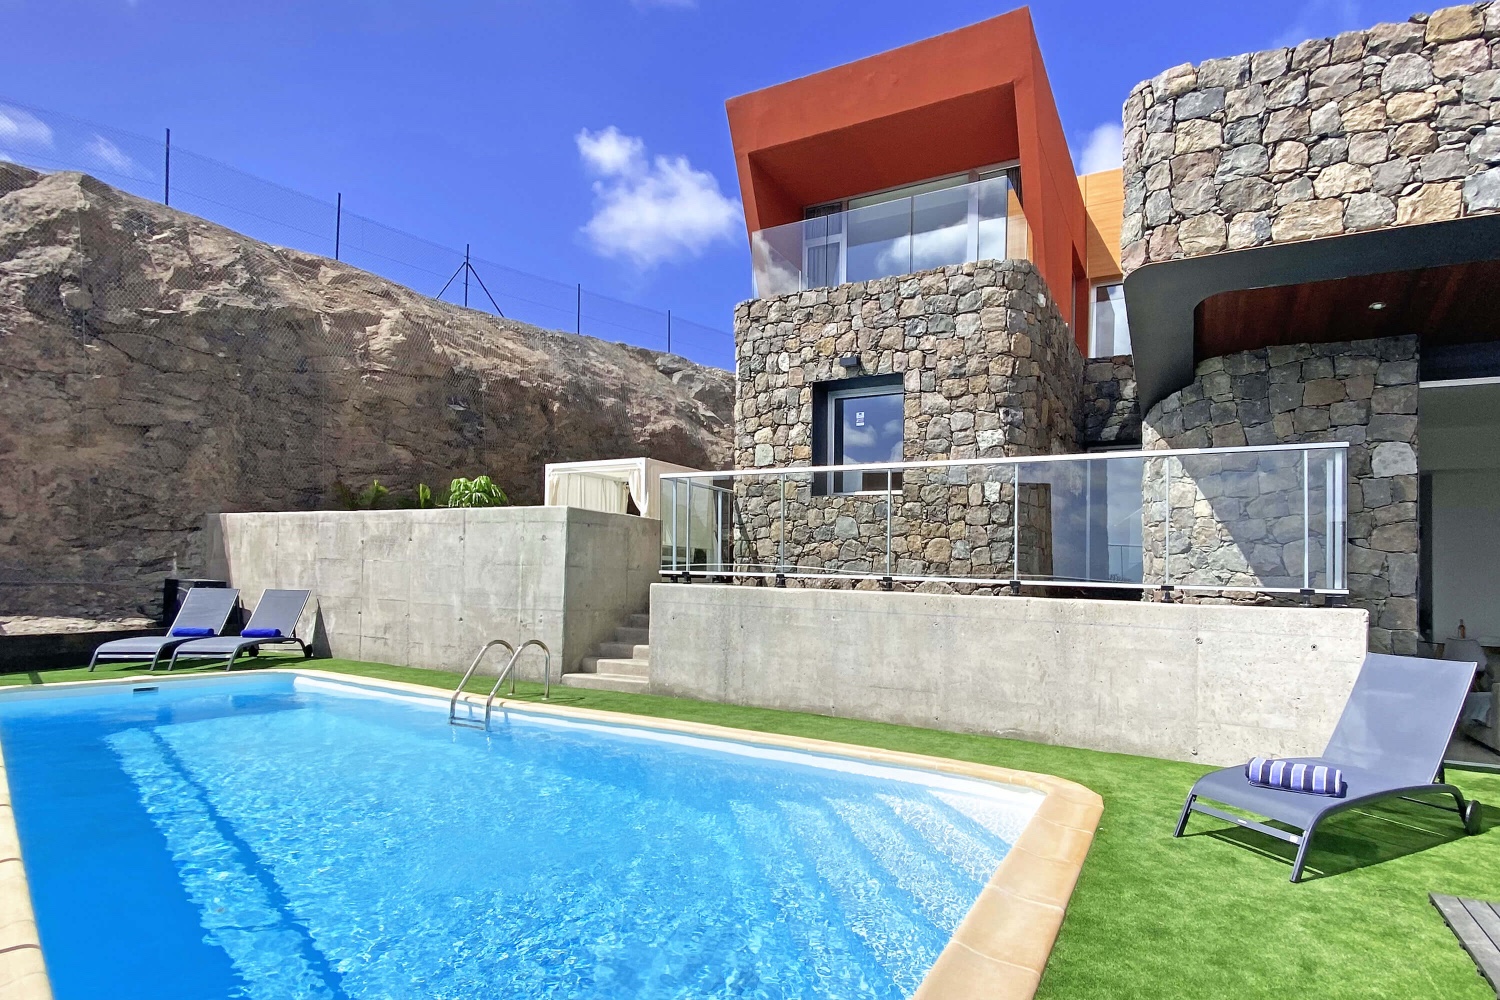 Dieses elegante und moderne Ferienhaus bietet die besten Voraussetzungen für einen erholsamen Urlaub im sonnigen Süden Gran Canarias mit der Möglichkeit, zu Hause zu arbeiten oder zu studieren.